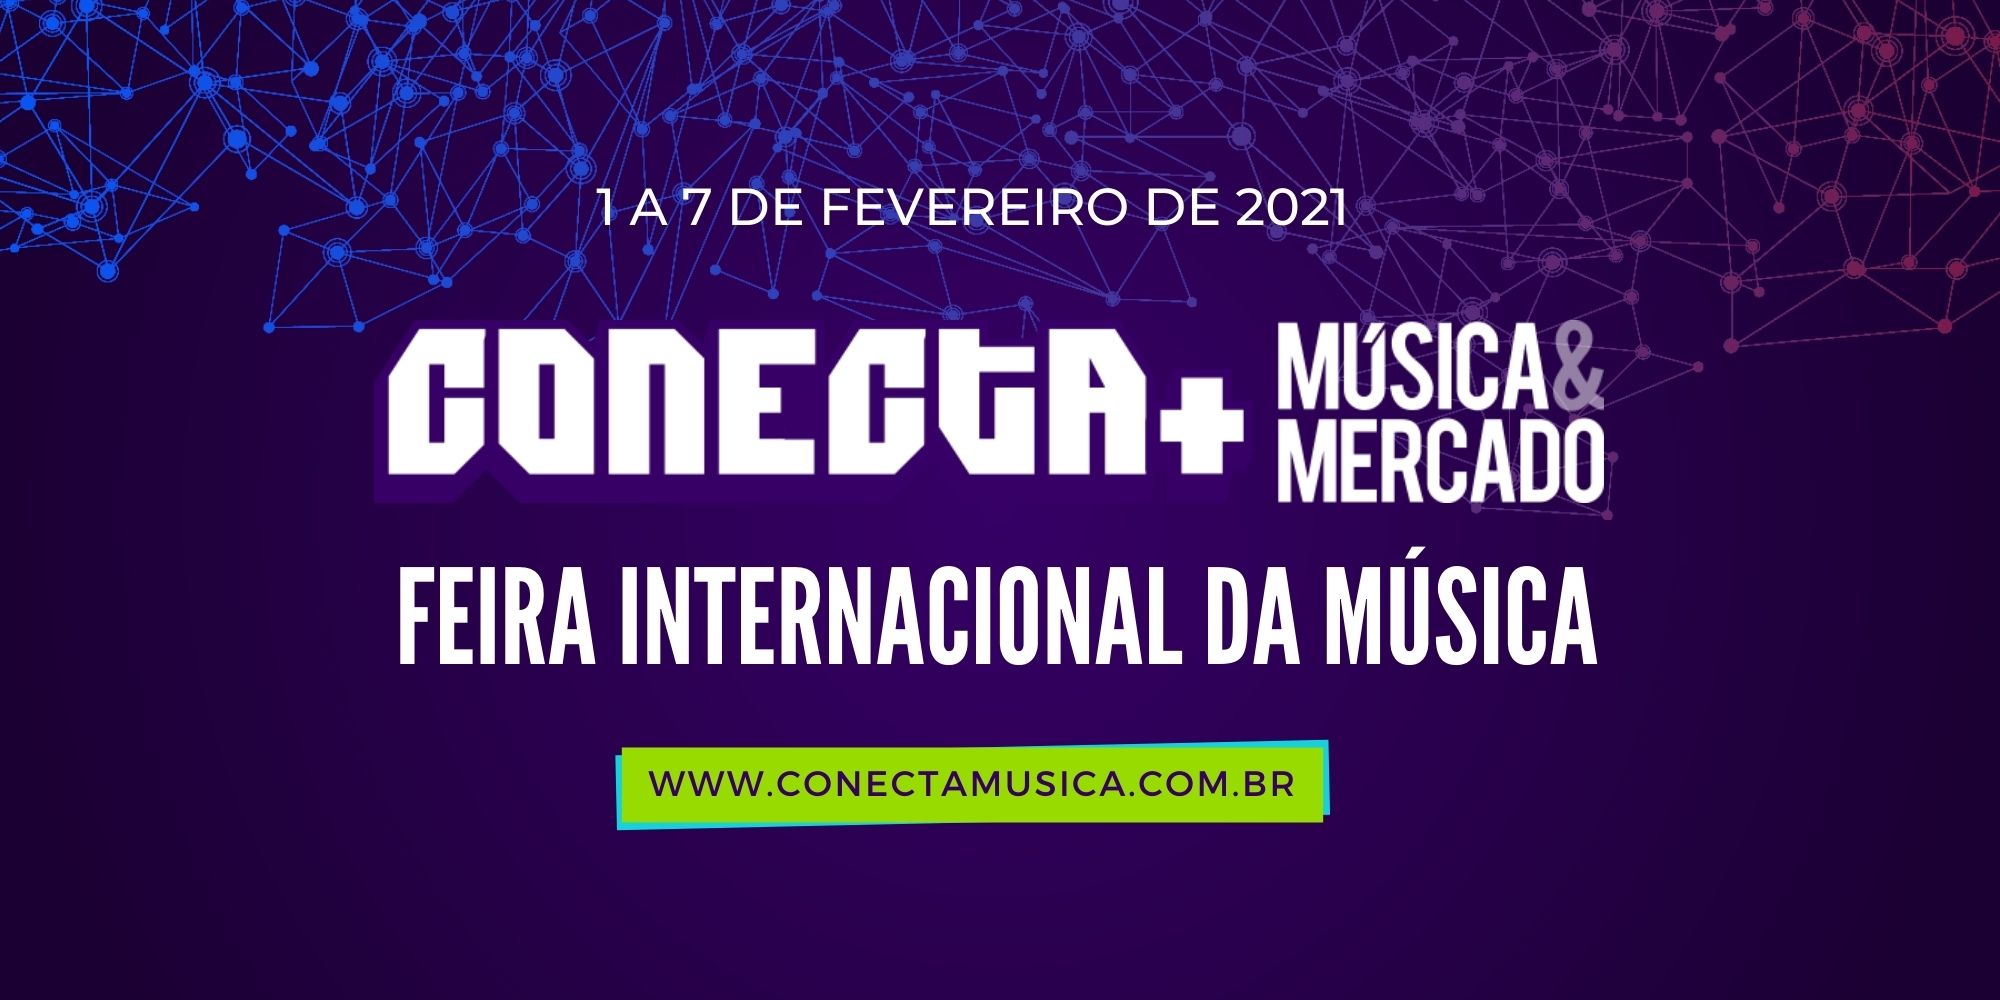 feira-conecta-Musica & Mercado